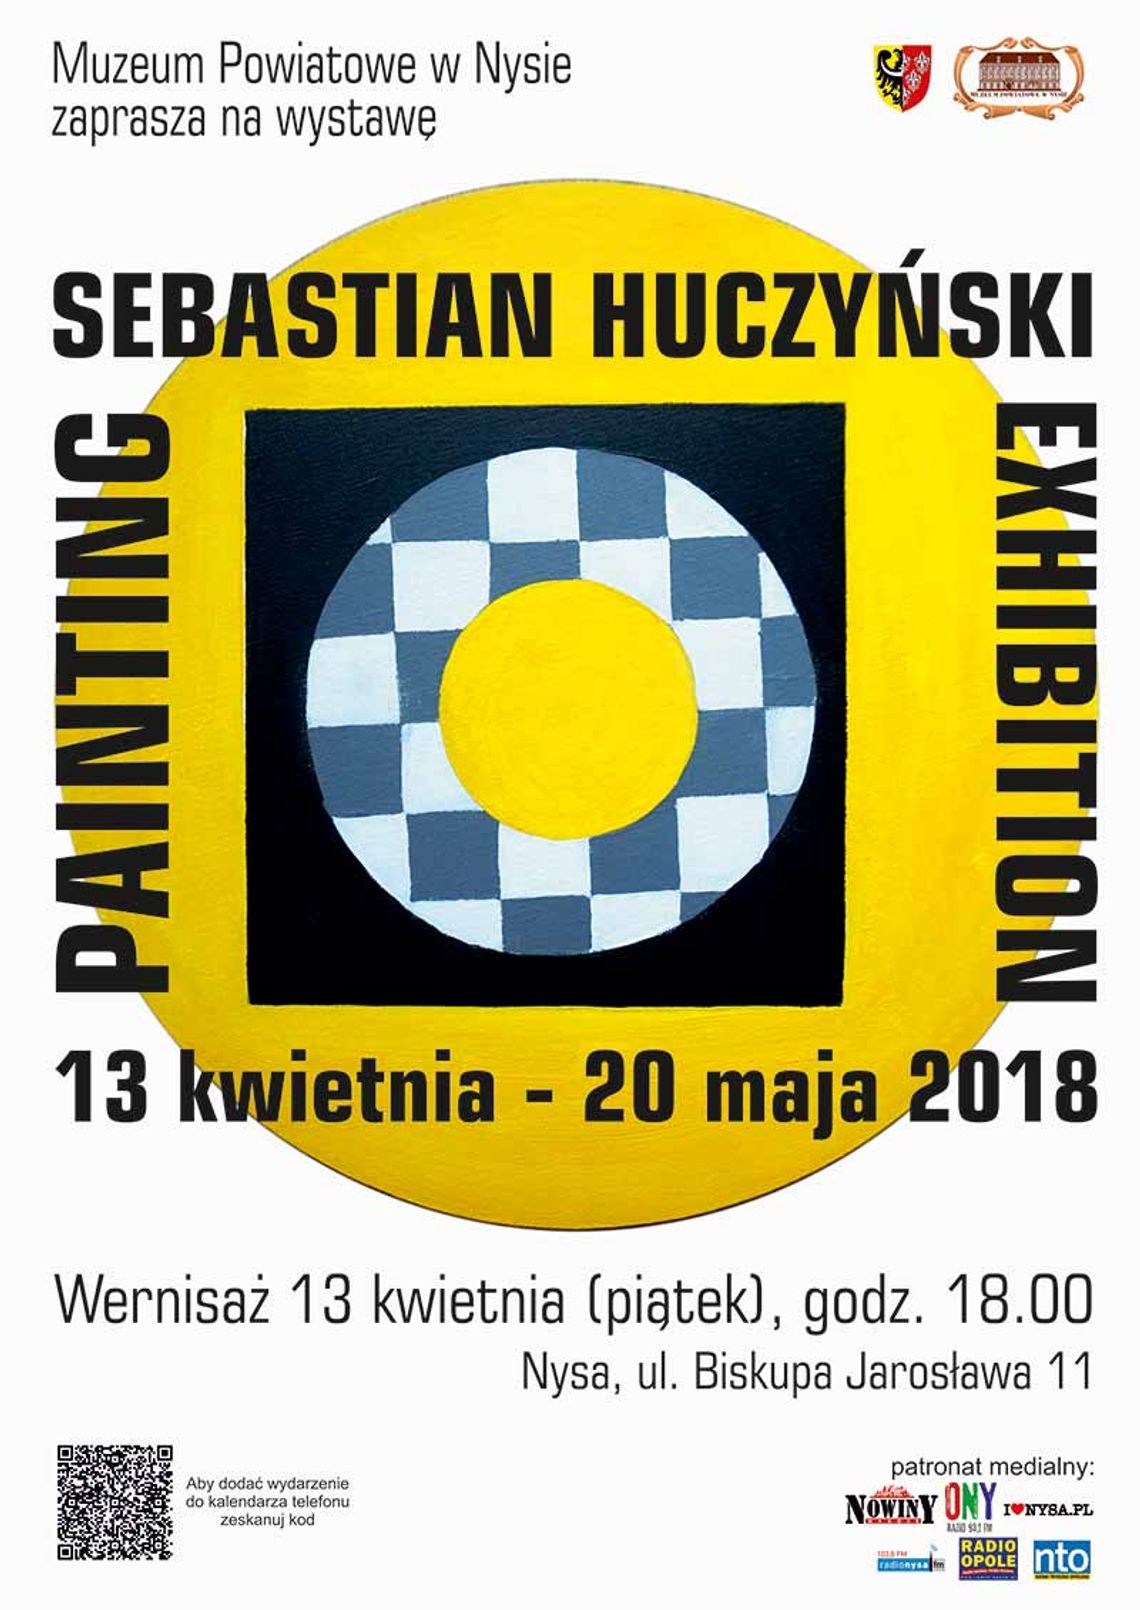 Wernisaż wystawy „Painting Exhibition” Sebastiana Huczyńskiego w nyskim muzeum.